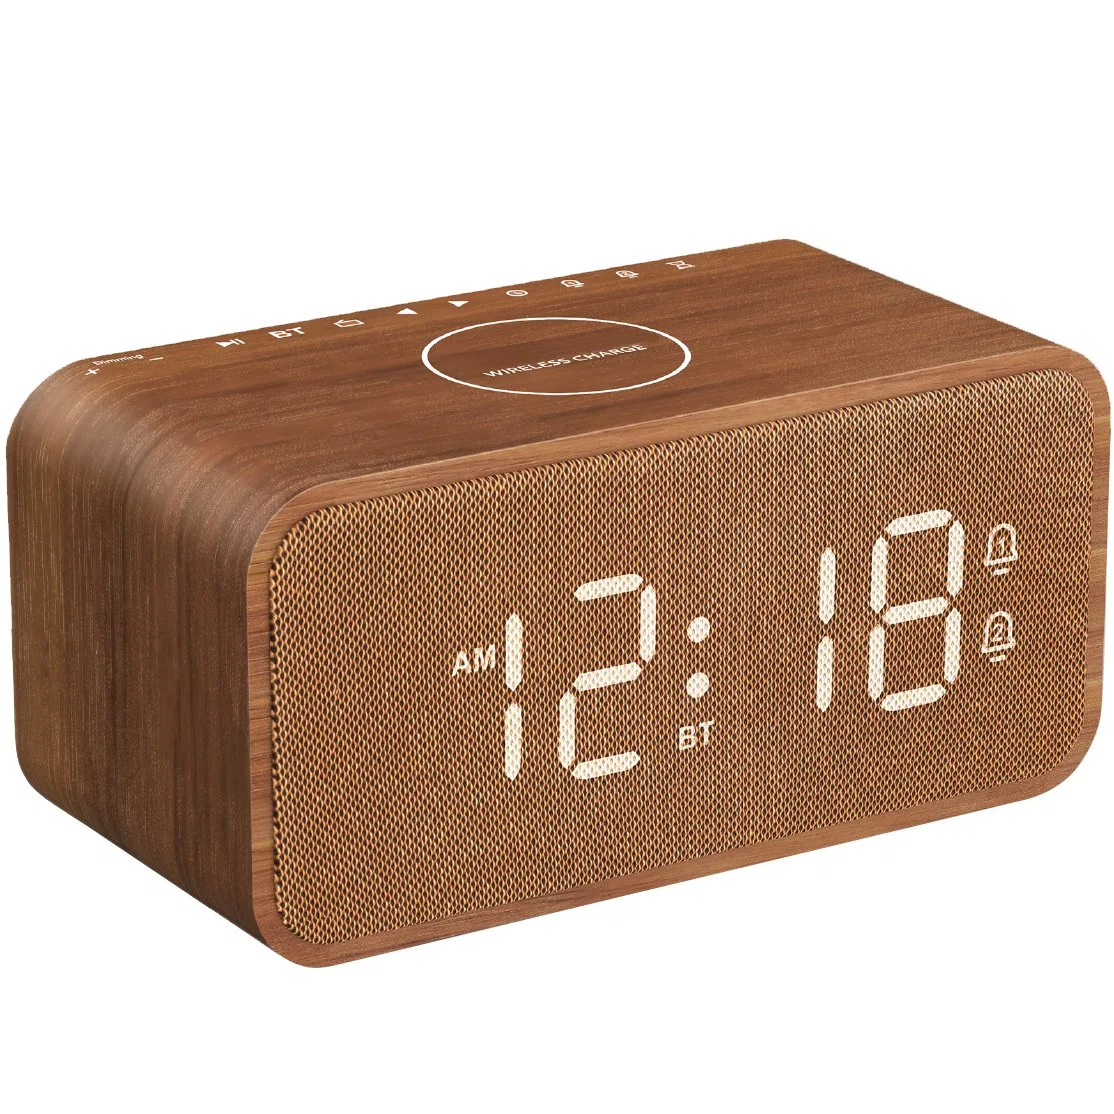 يدعم راديو FM لاسلكي بقوة 10 واط لشحن USB لاسلكيًا Bluetooth Wooden منبه الساعة